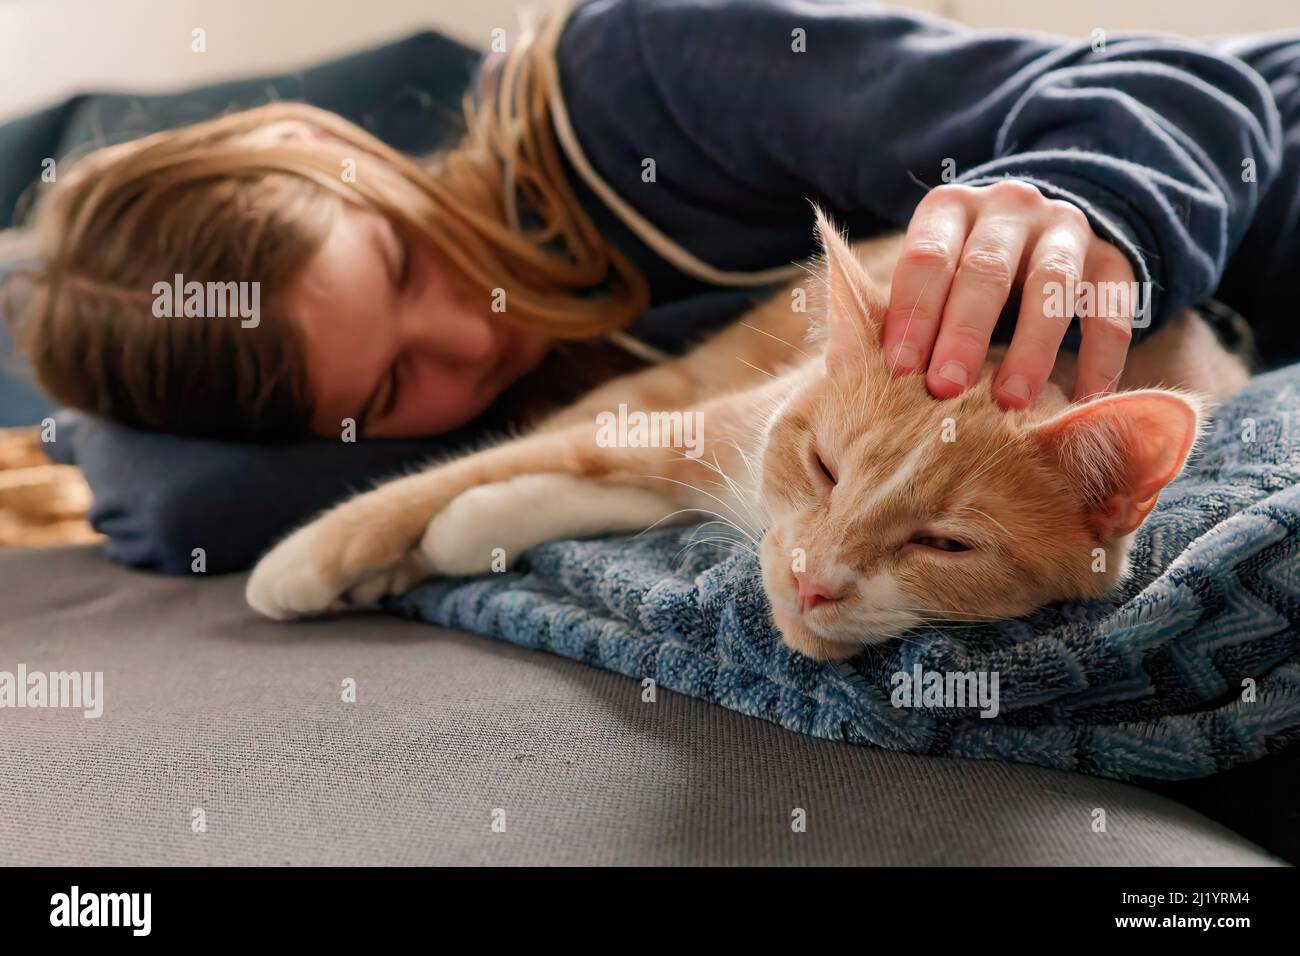 Une jeune adolescente allongé sur un canapé trouve le confort en se blottant près de son chat et en le caressant Banque D'Images